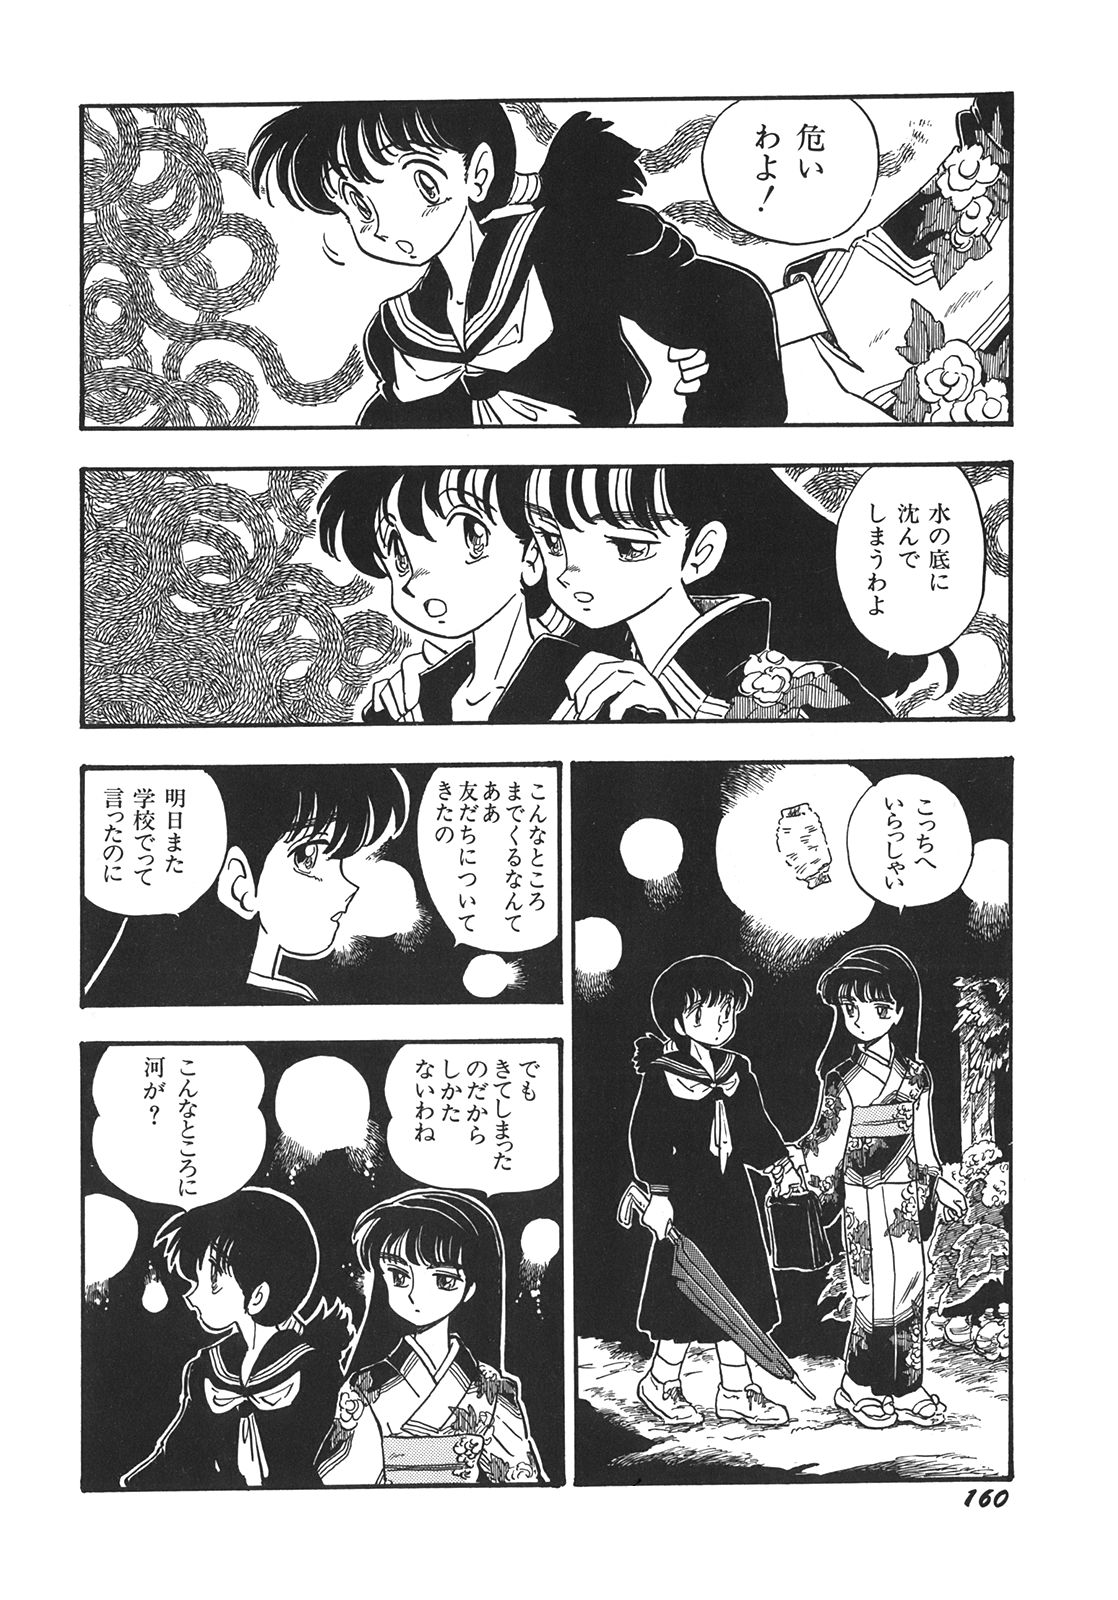 [Shinda Mane] RAKE [1996-03-25] [新田真子] RAKE [1996-03-25]